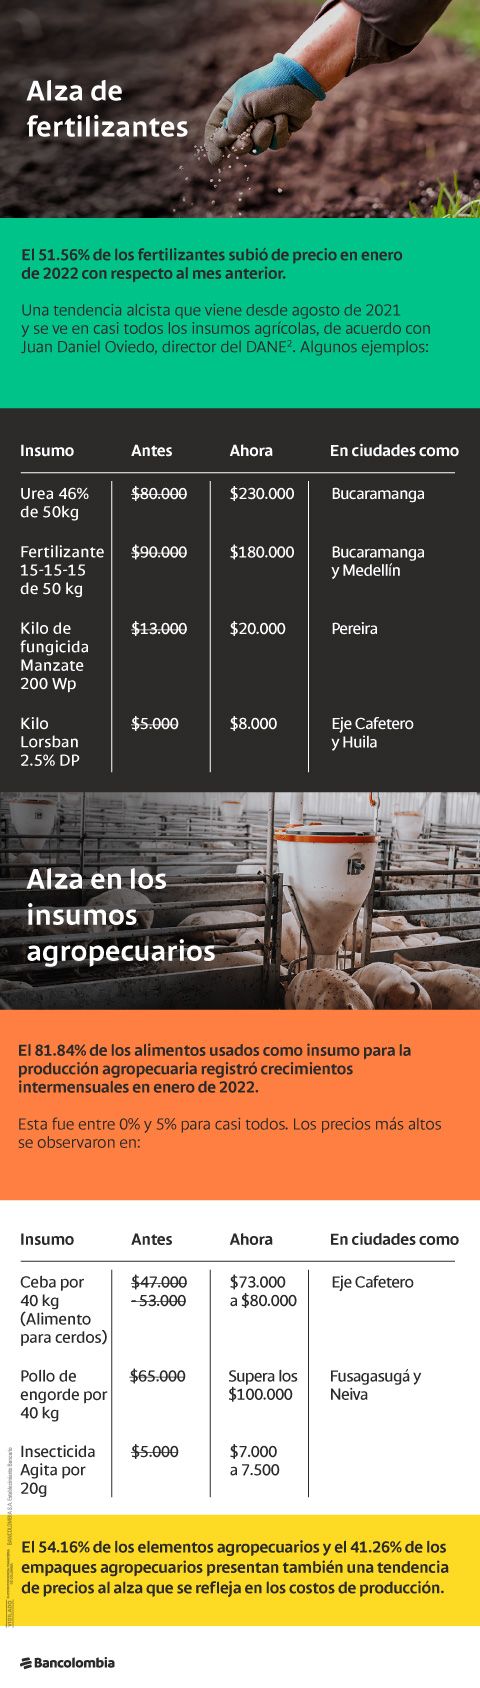 Precios al alza de fertilizantes e insumos agropecuarios en enero de 2022 en Colombia